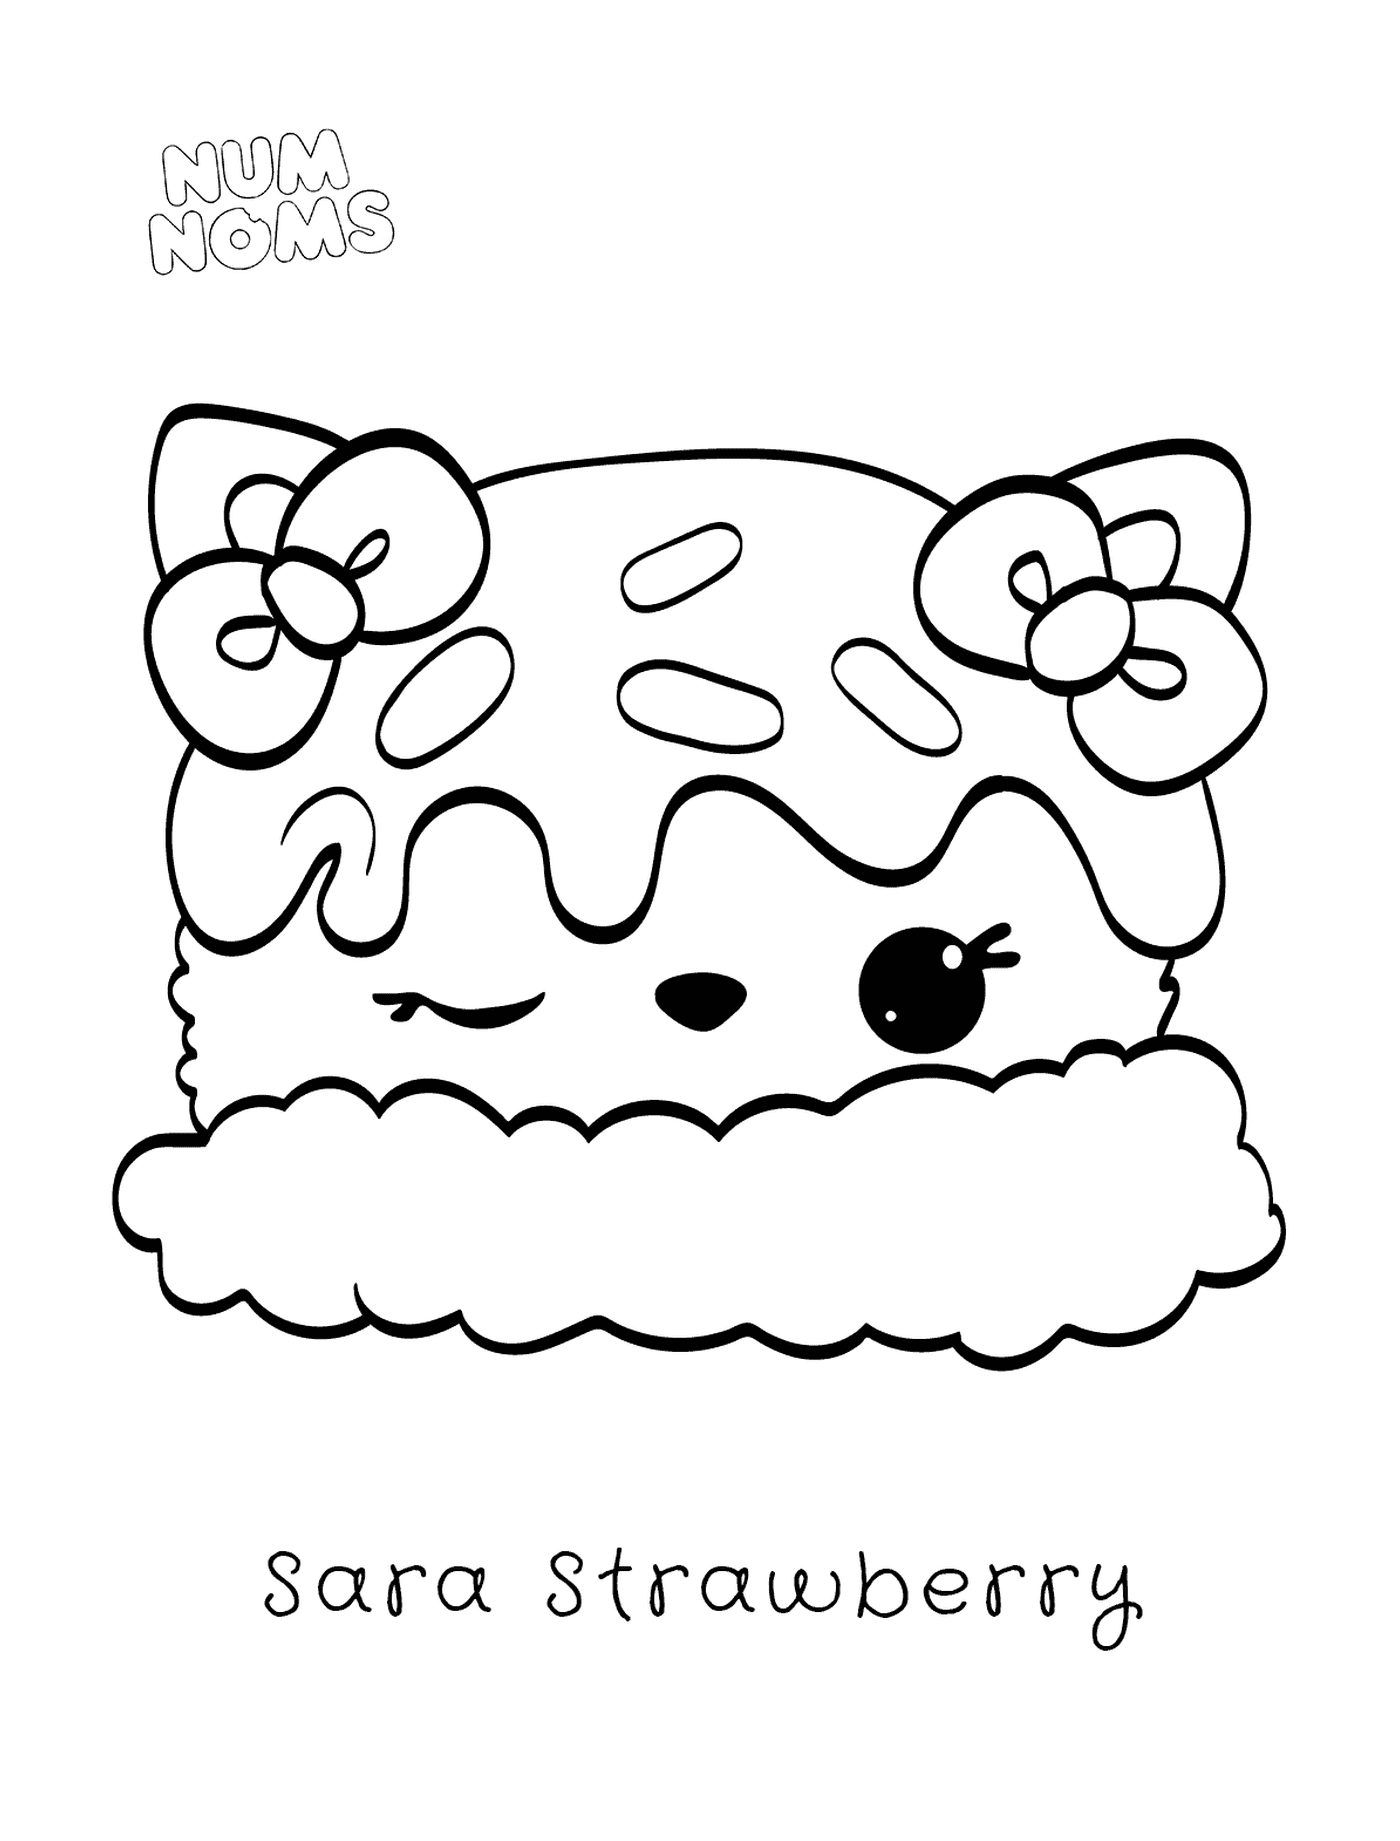  Strawberry Sara, uma delícia 